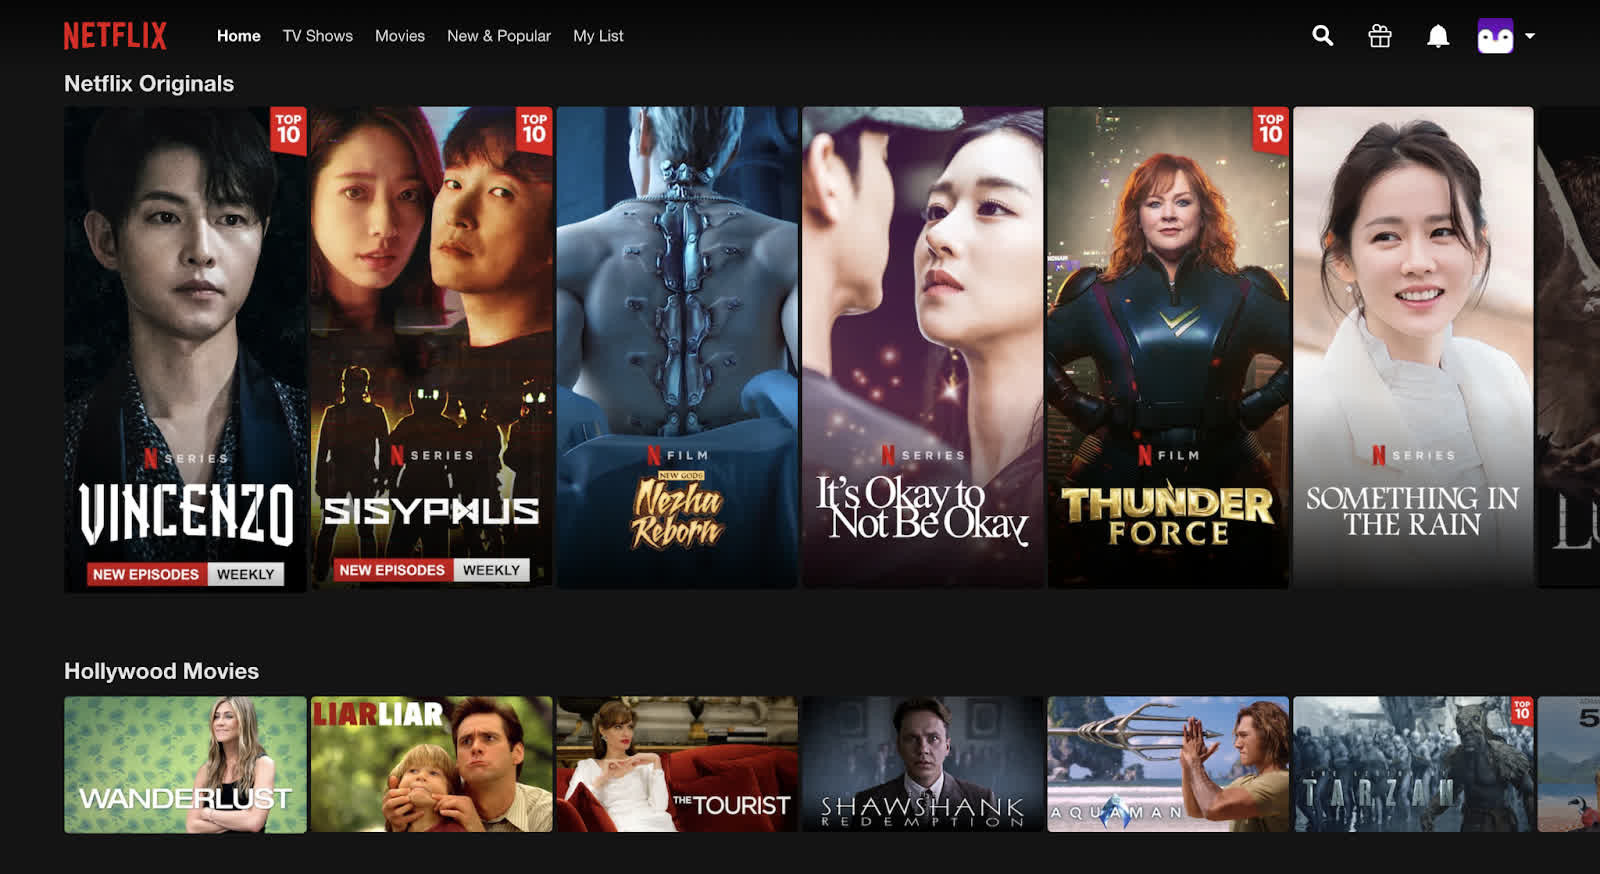 Vũ trụ điện ảnh Netflix đã sử dụng 2 công thức tâm lý khiến toàn thế giới cày phim mê mệt không thể dứt ra nổi - Ảnh 3.